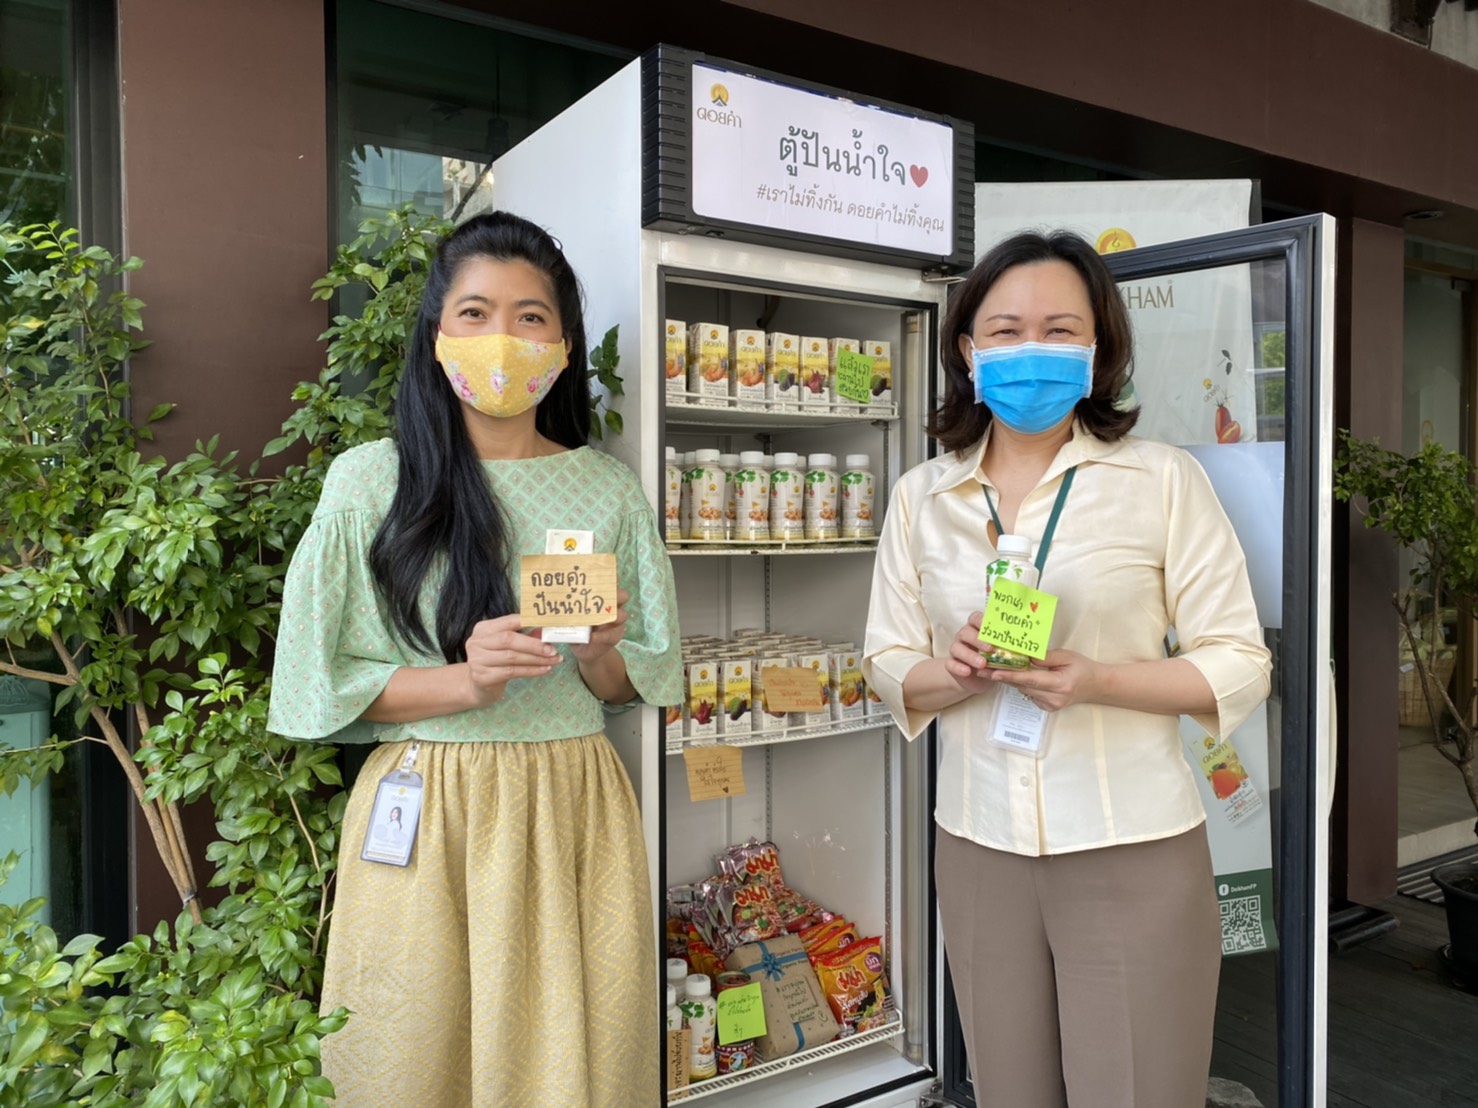 ดอยคำ เปิด ตู้ปันน้ำใจ บรรเทาความเดือดร้อน สำหรับผู้ที่เผชิญวิกฤตโควิด-19 พร้อมร่วม โครงการตู้กับข้าวคนไทย